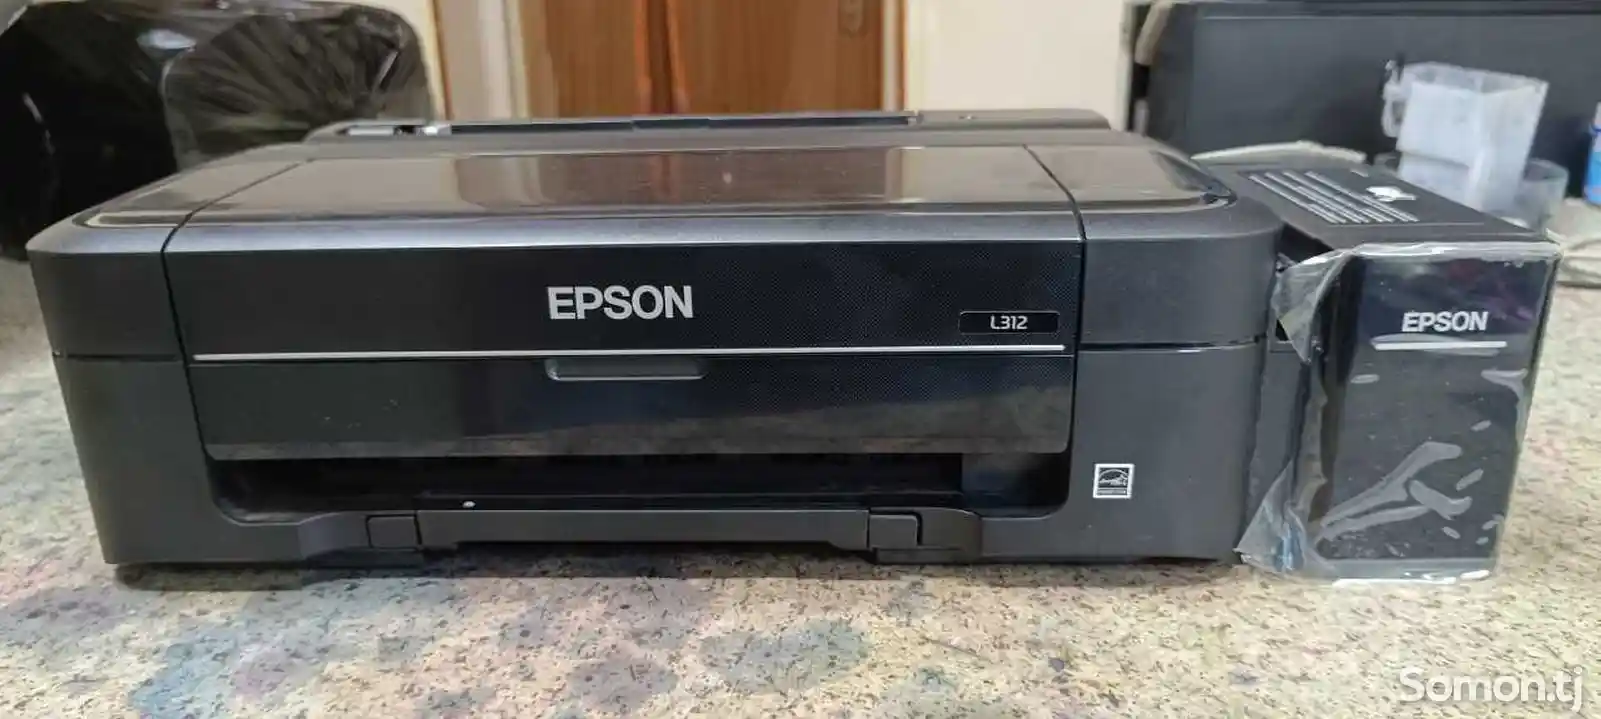 Принтер Epson L312-4